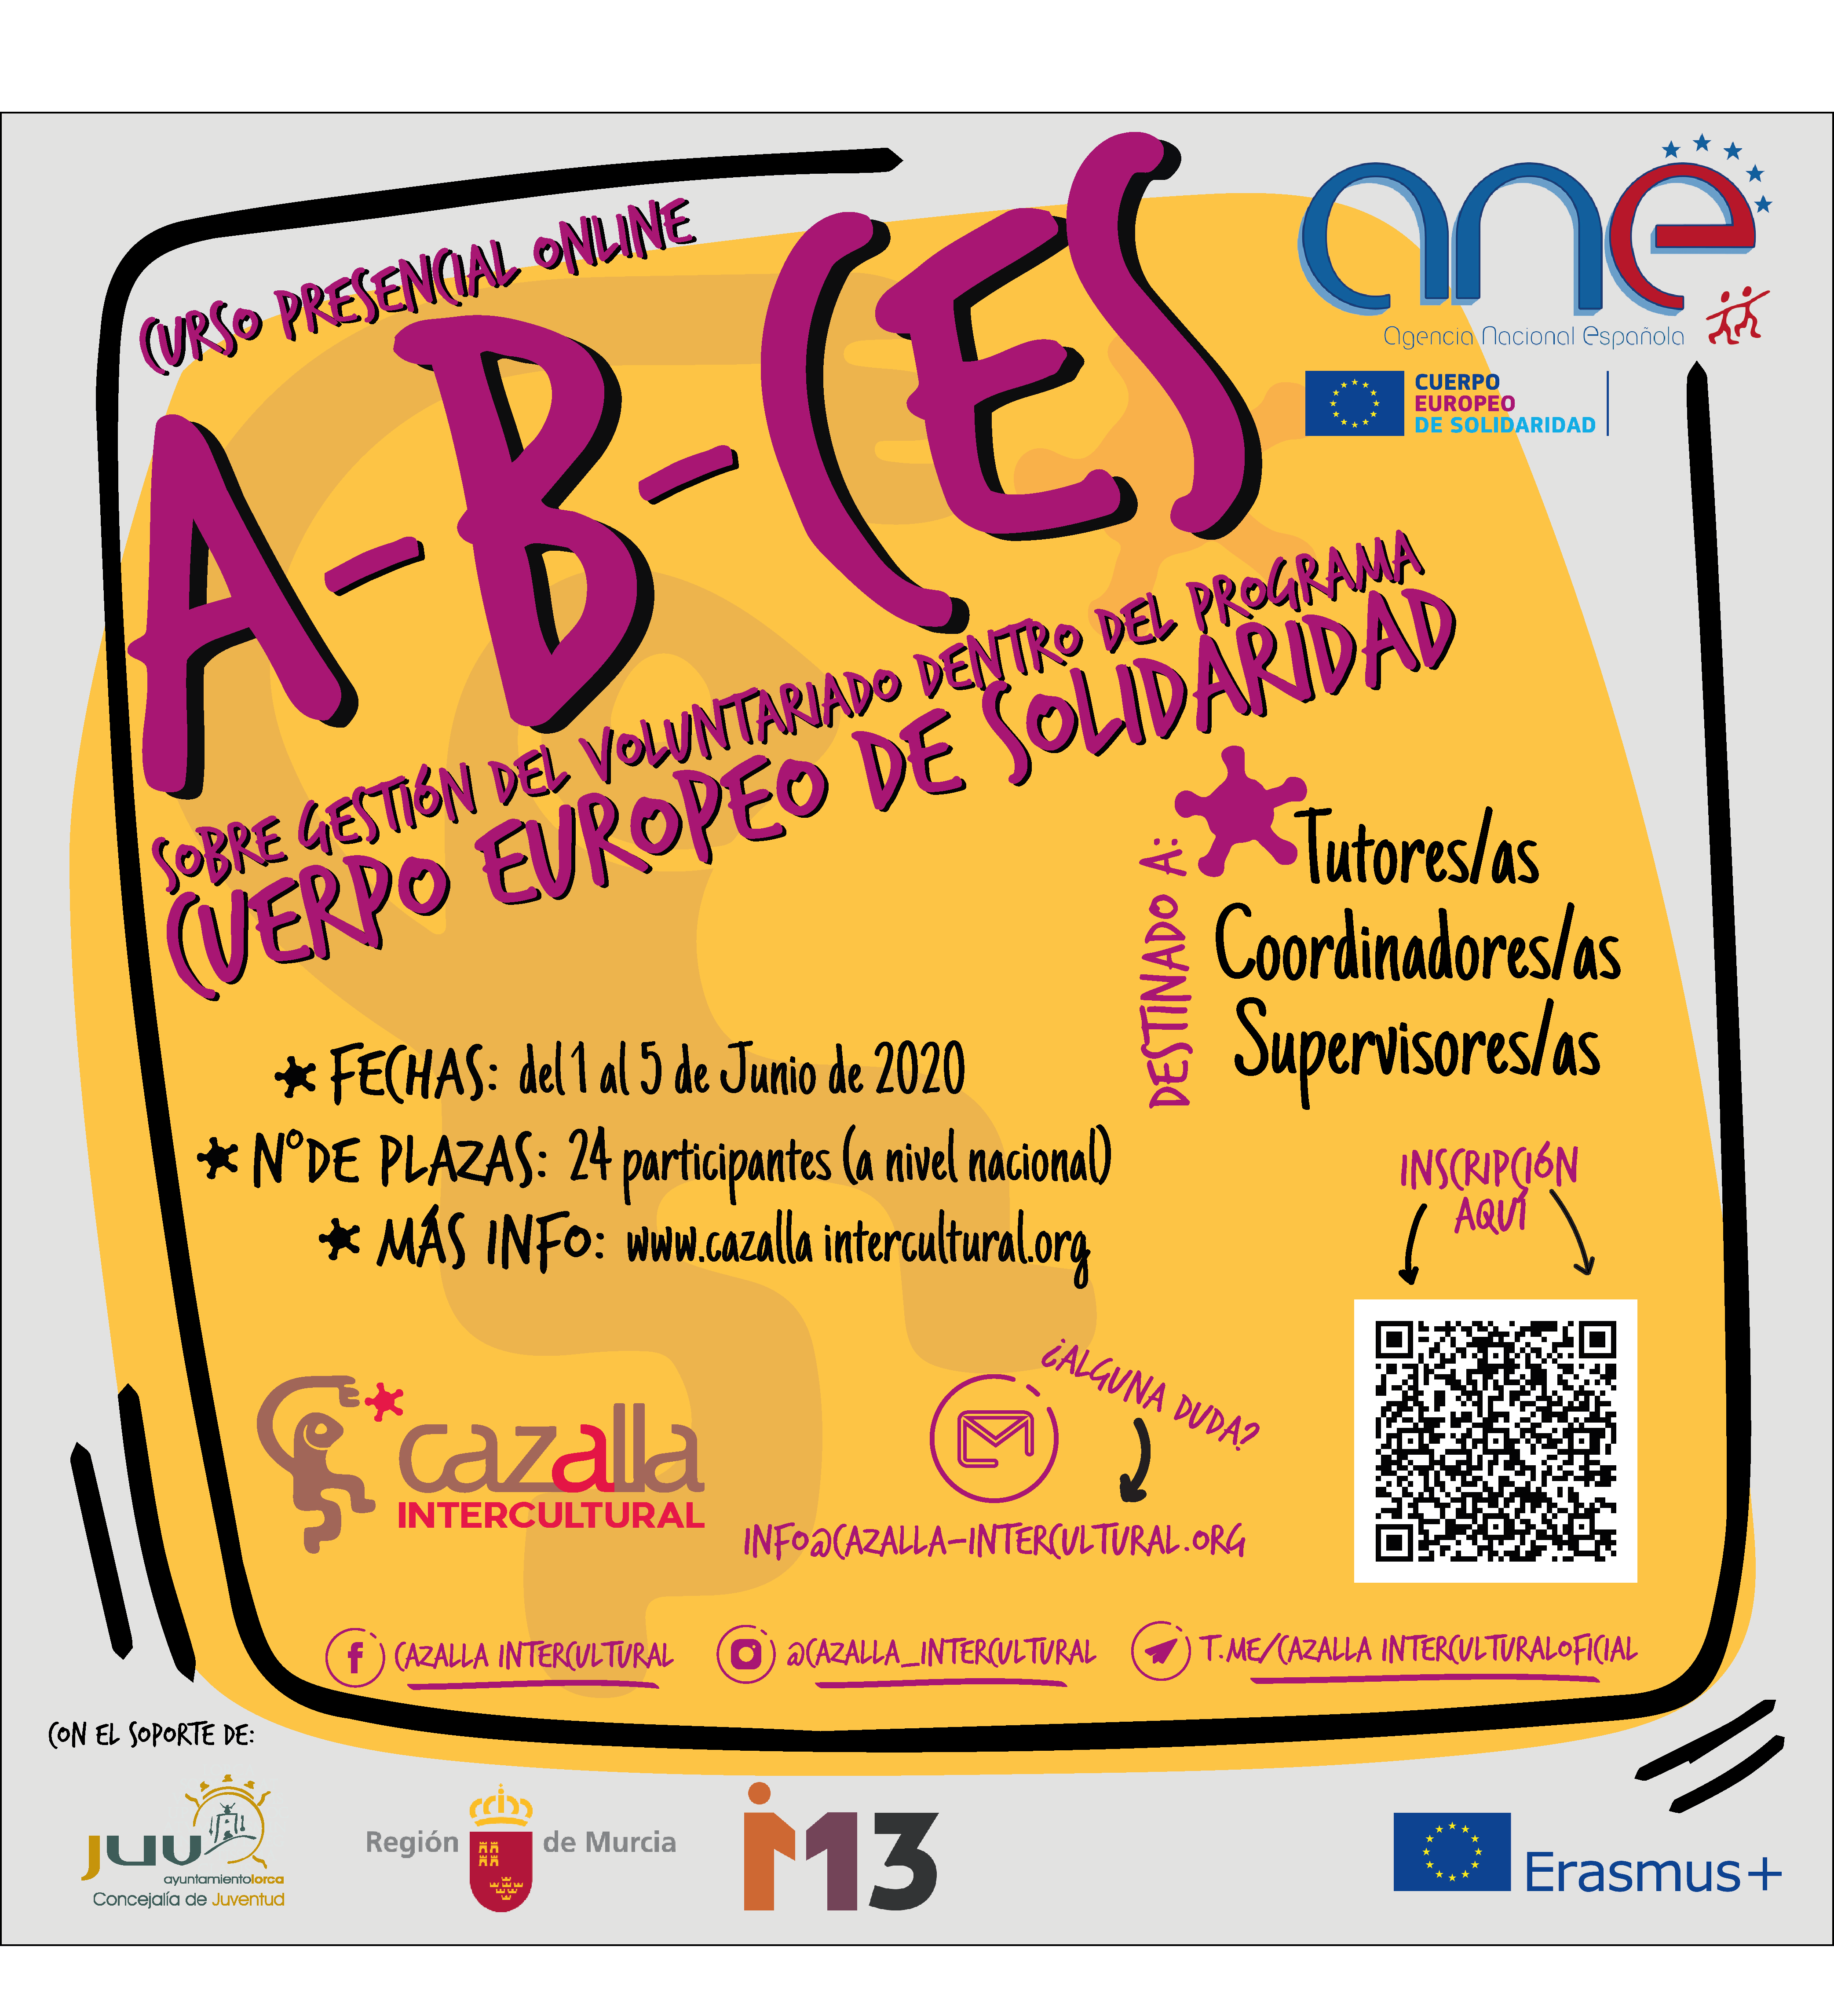 A-B-CES Curso presencial online sobre gestión del voluntariado dentro del Programa Cuerpo Europeo de Solidaridad